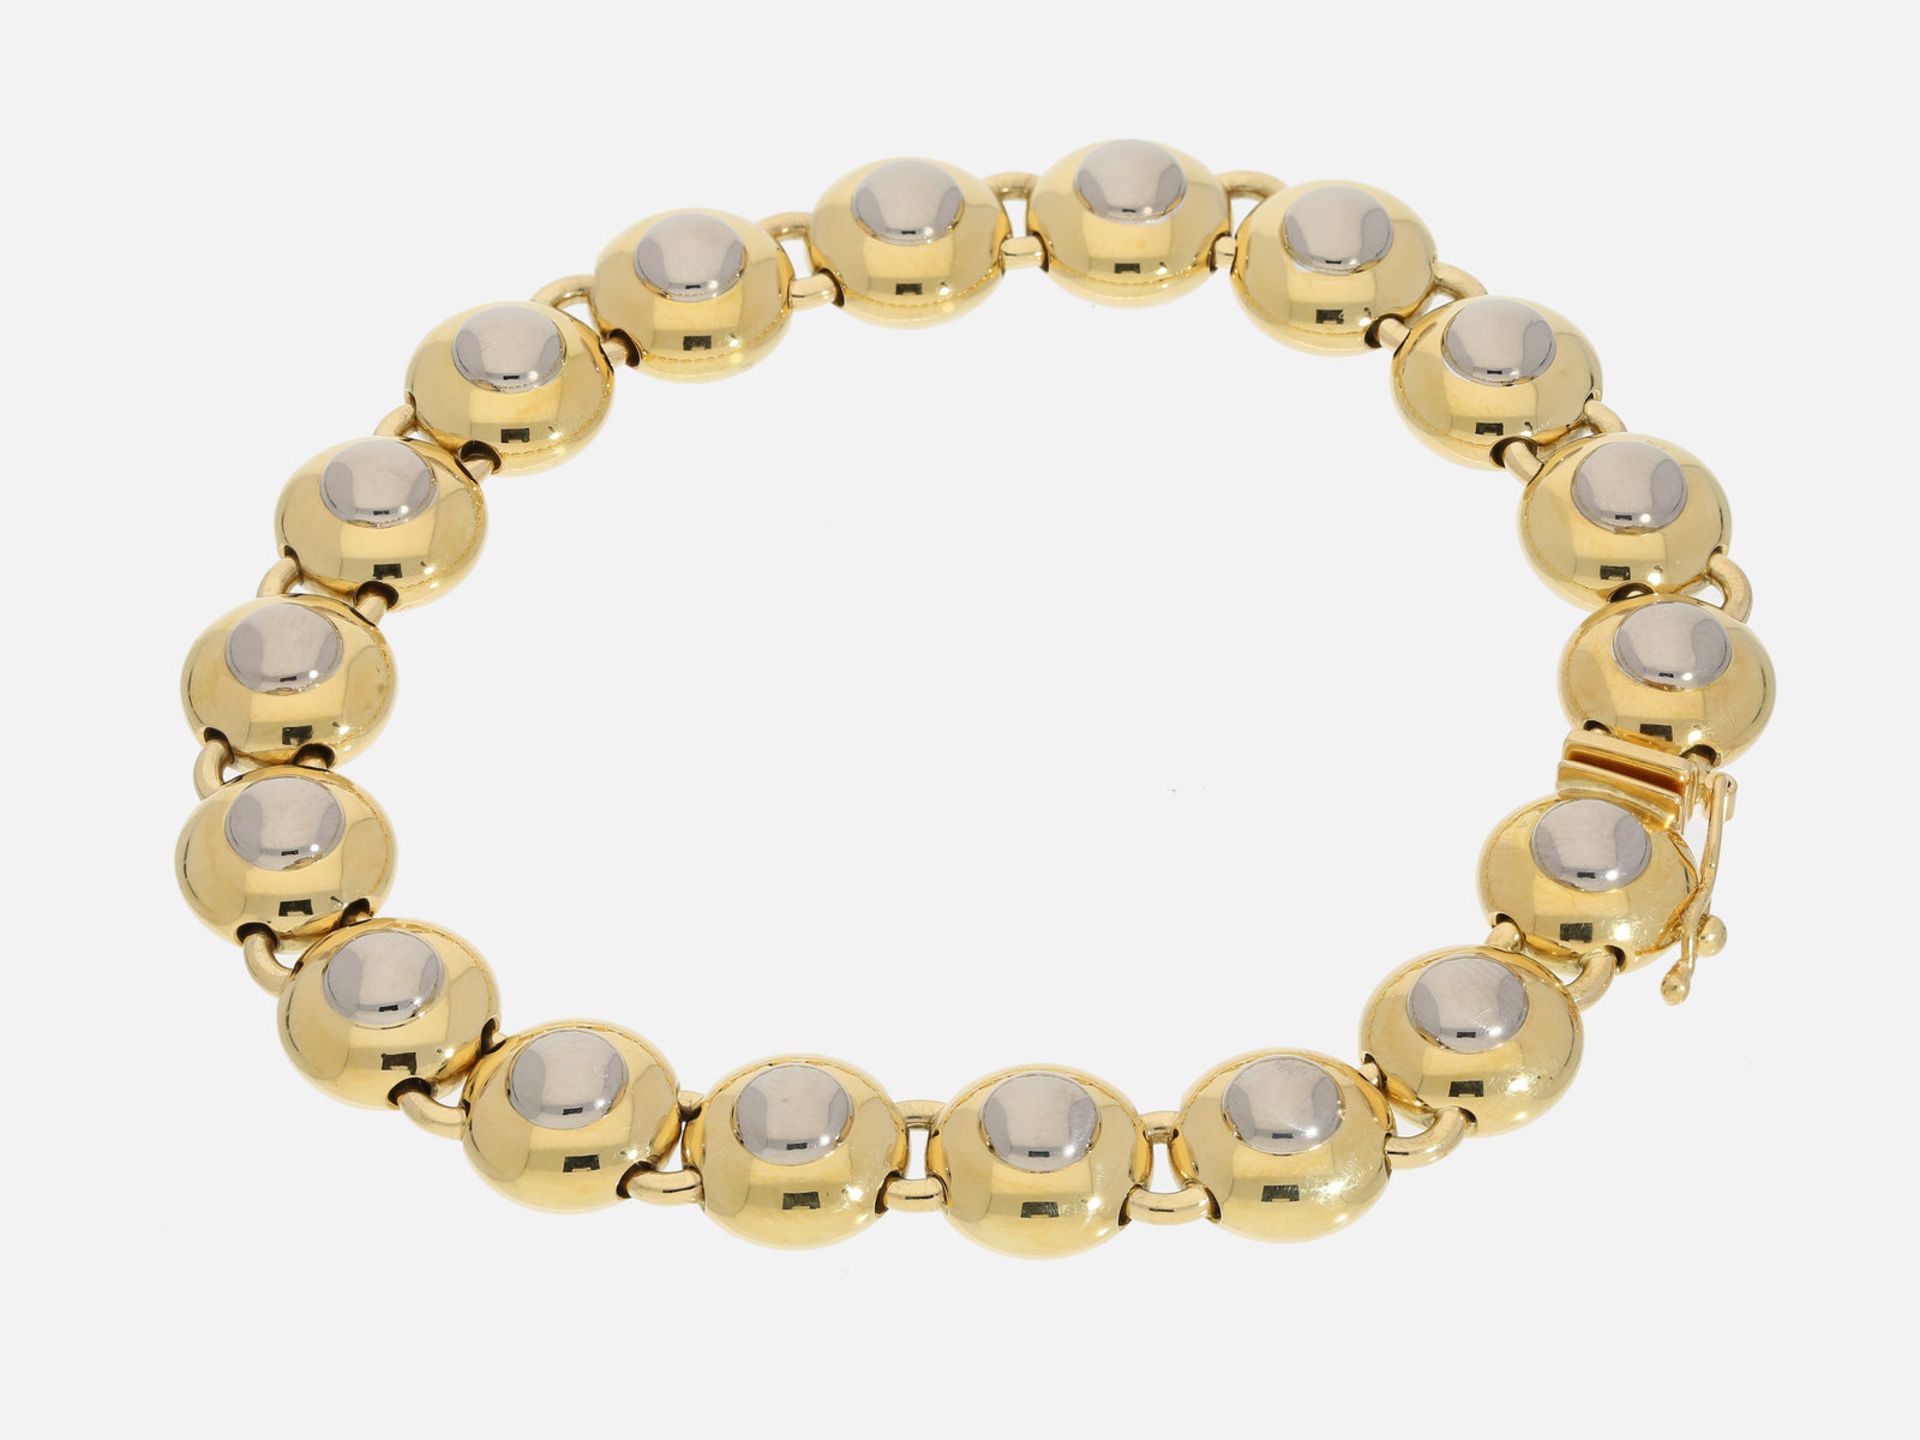 Armband: hochwertiges Designer-Bicolor-Goldarmband, 18K Gold, UNIKAT!Ca. 19,5cm lang, ca. 10mm